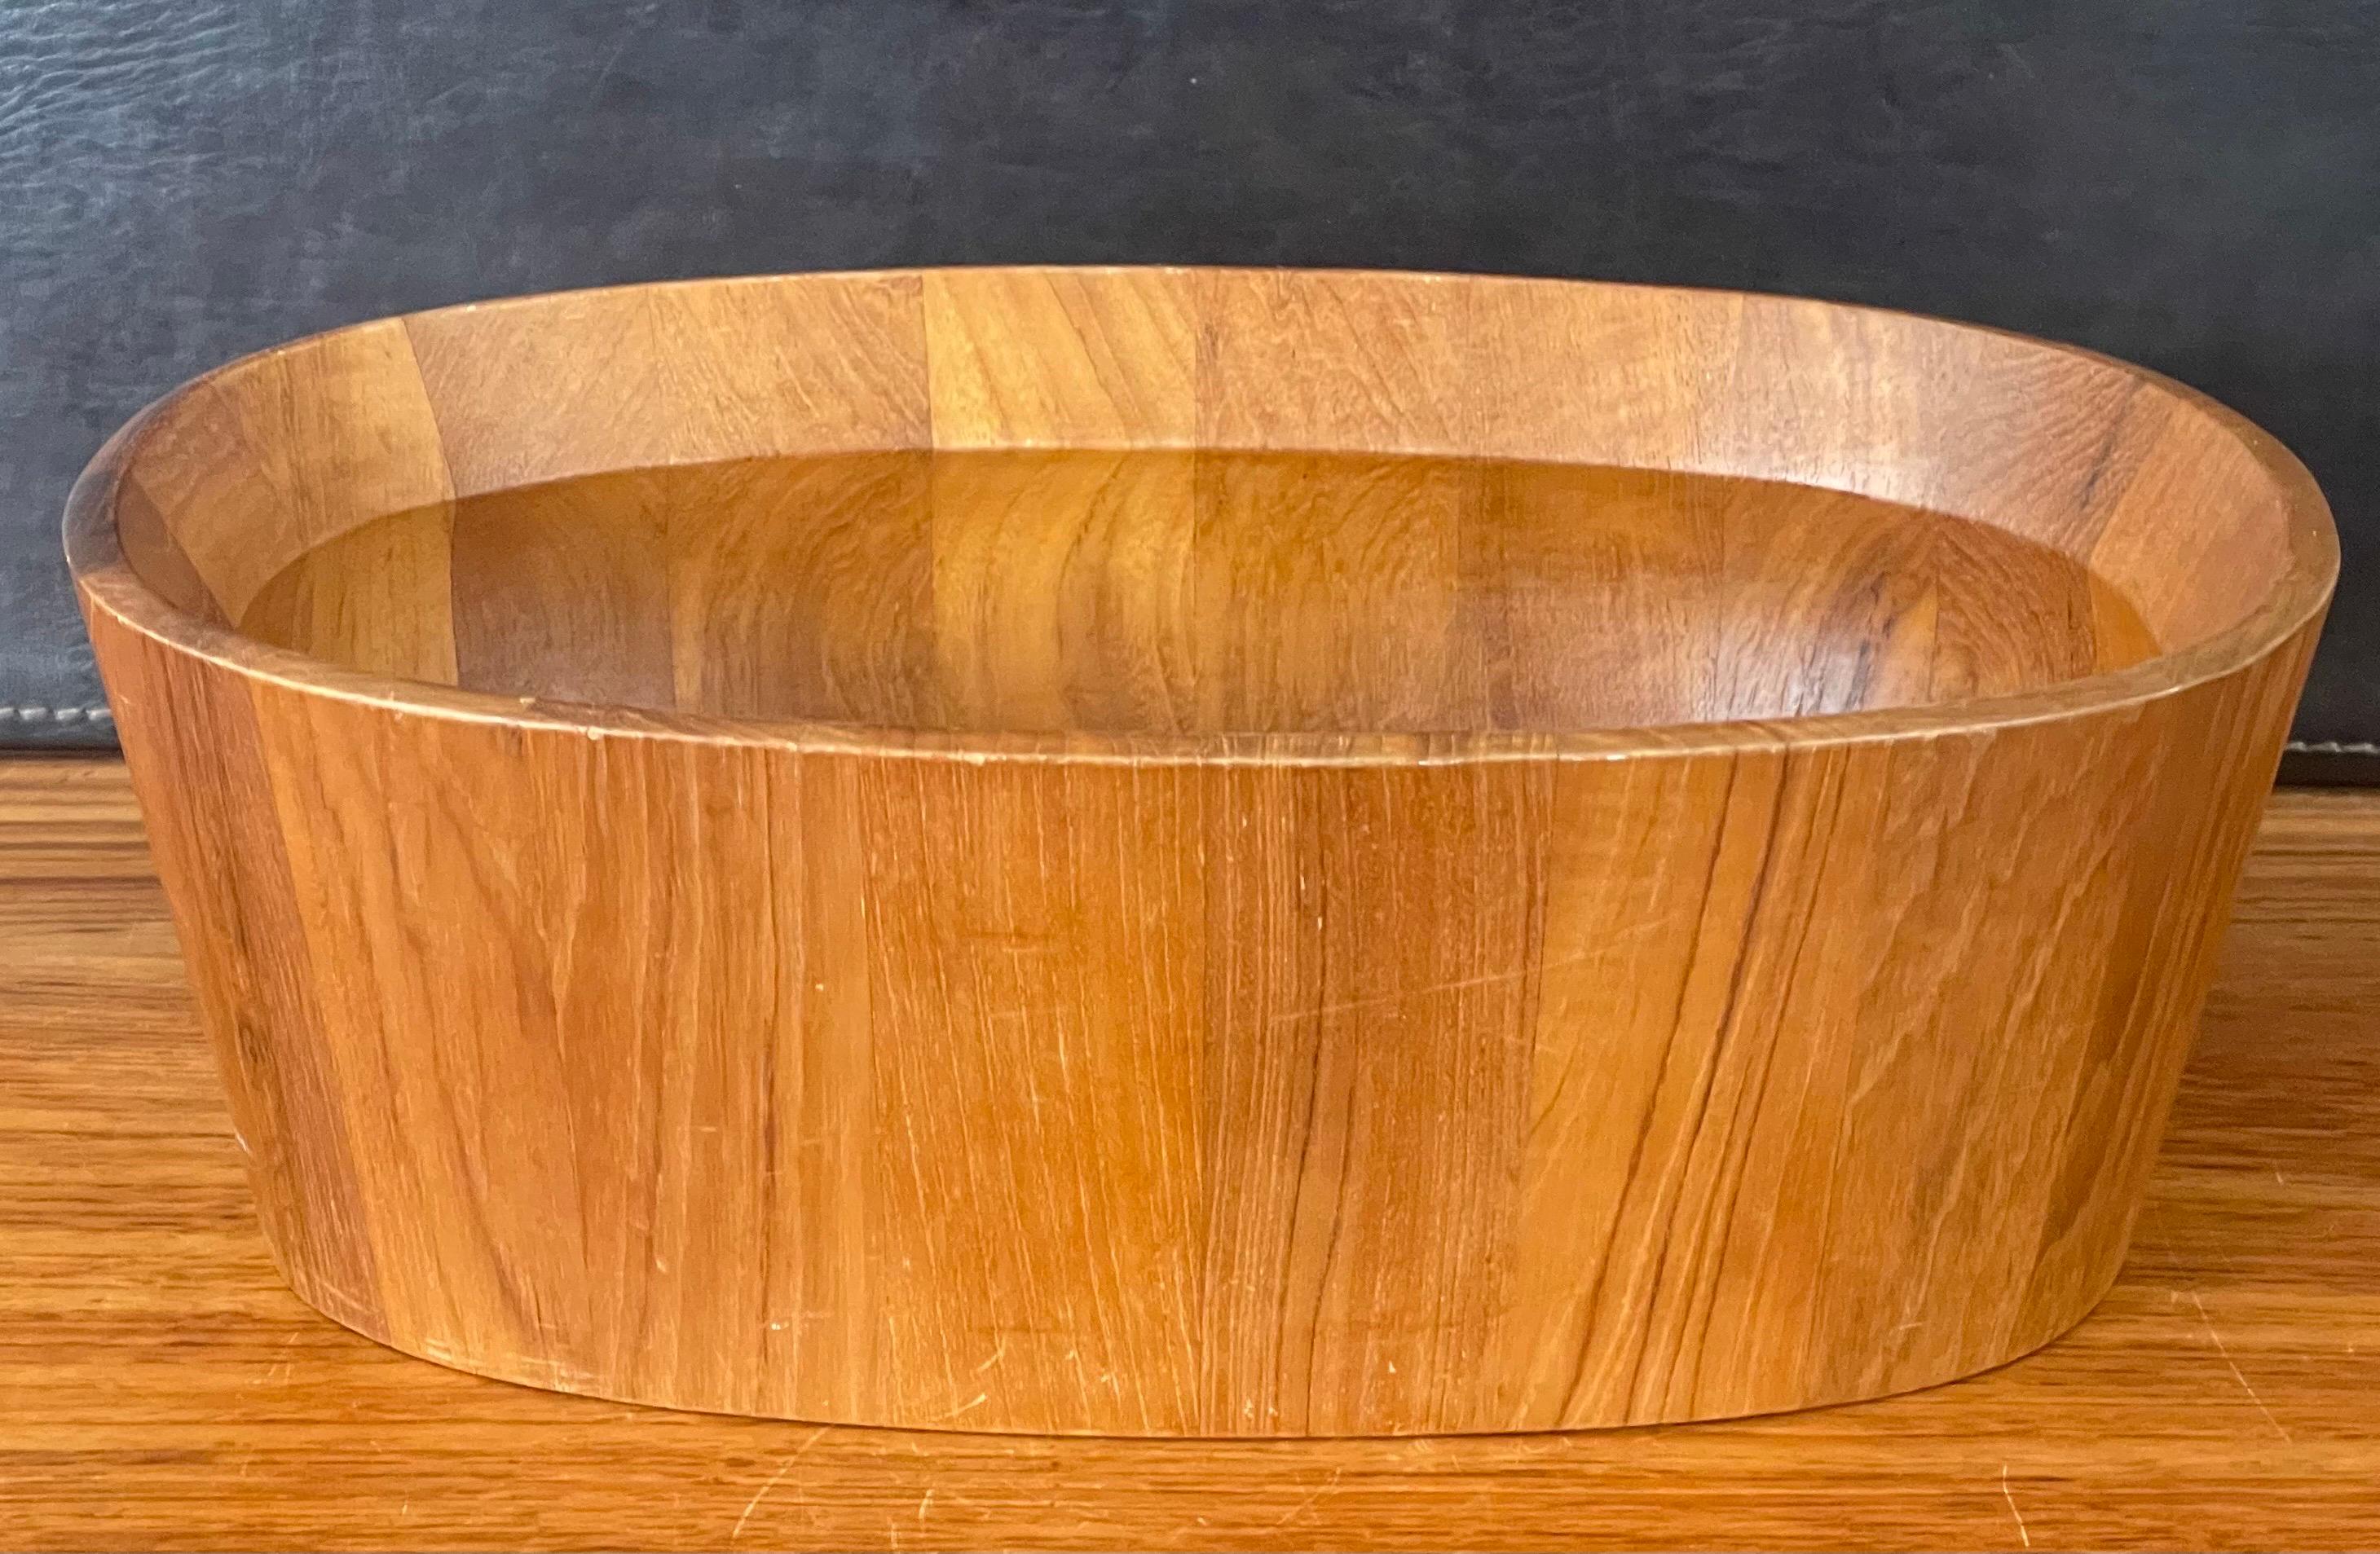 Danish Modern Oval Shaped Staved Teak Bowl by Jens Quistgaard for Dansk For Sale 2